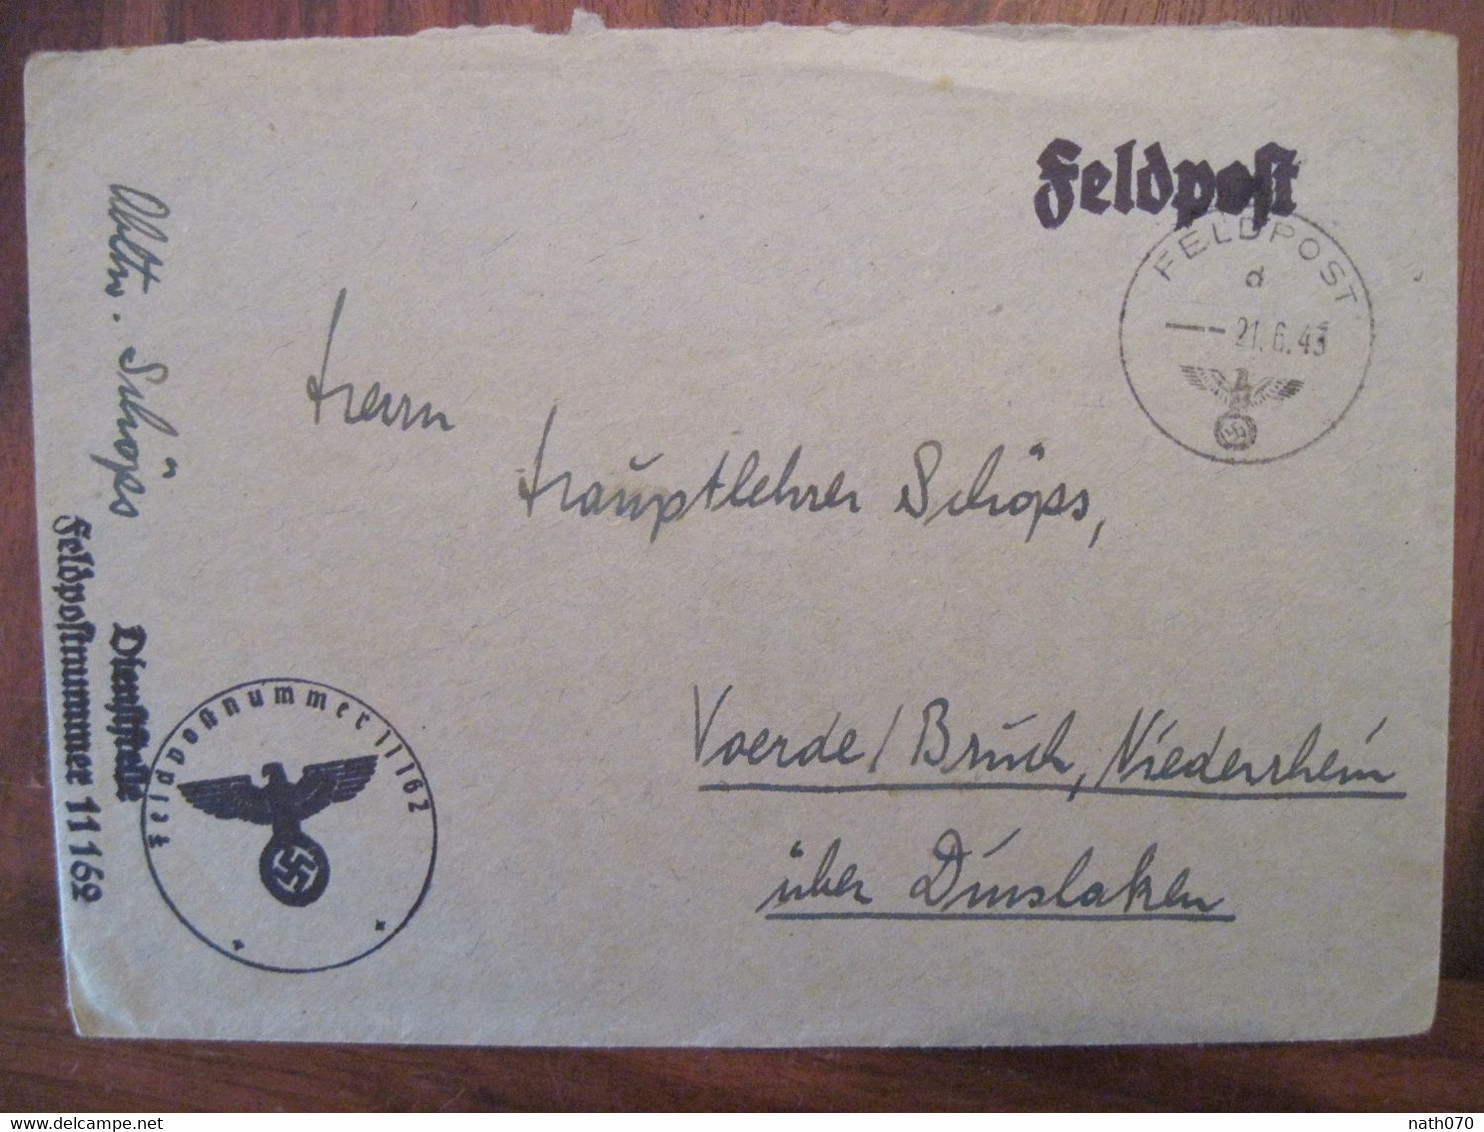 Feldpost 1943 Nach Voerde FDP Feldpostnummer 11162 Regimentsstab Infanterie-Regiment 60 Reich Allemagne Cover WK2 - Lettres & Documents